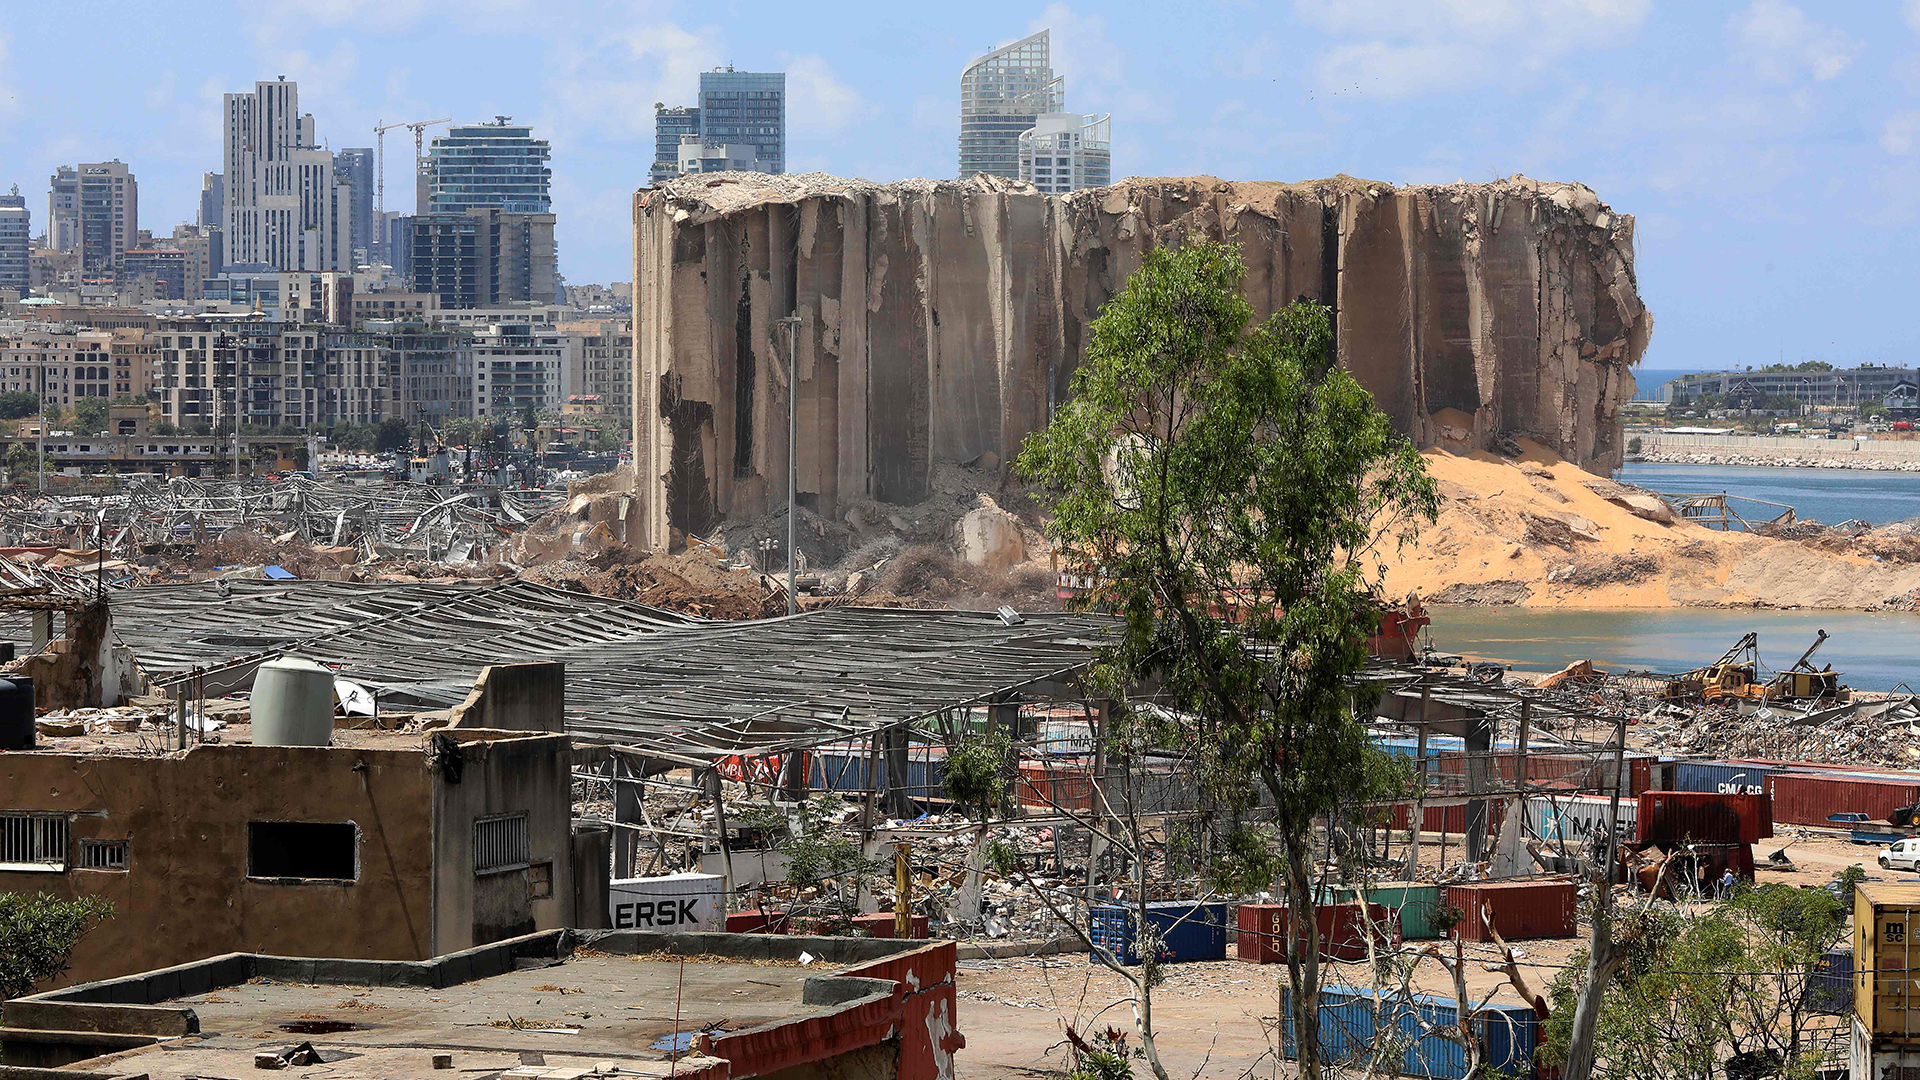 Hafen von Beirut nach einer gewaltigen chemischen Explosion, die große Teile der libanesischen Hauptstadt verwüstete.